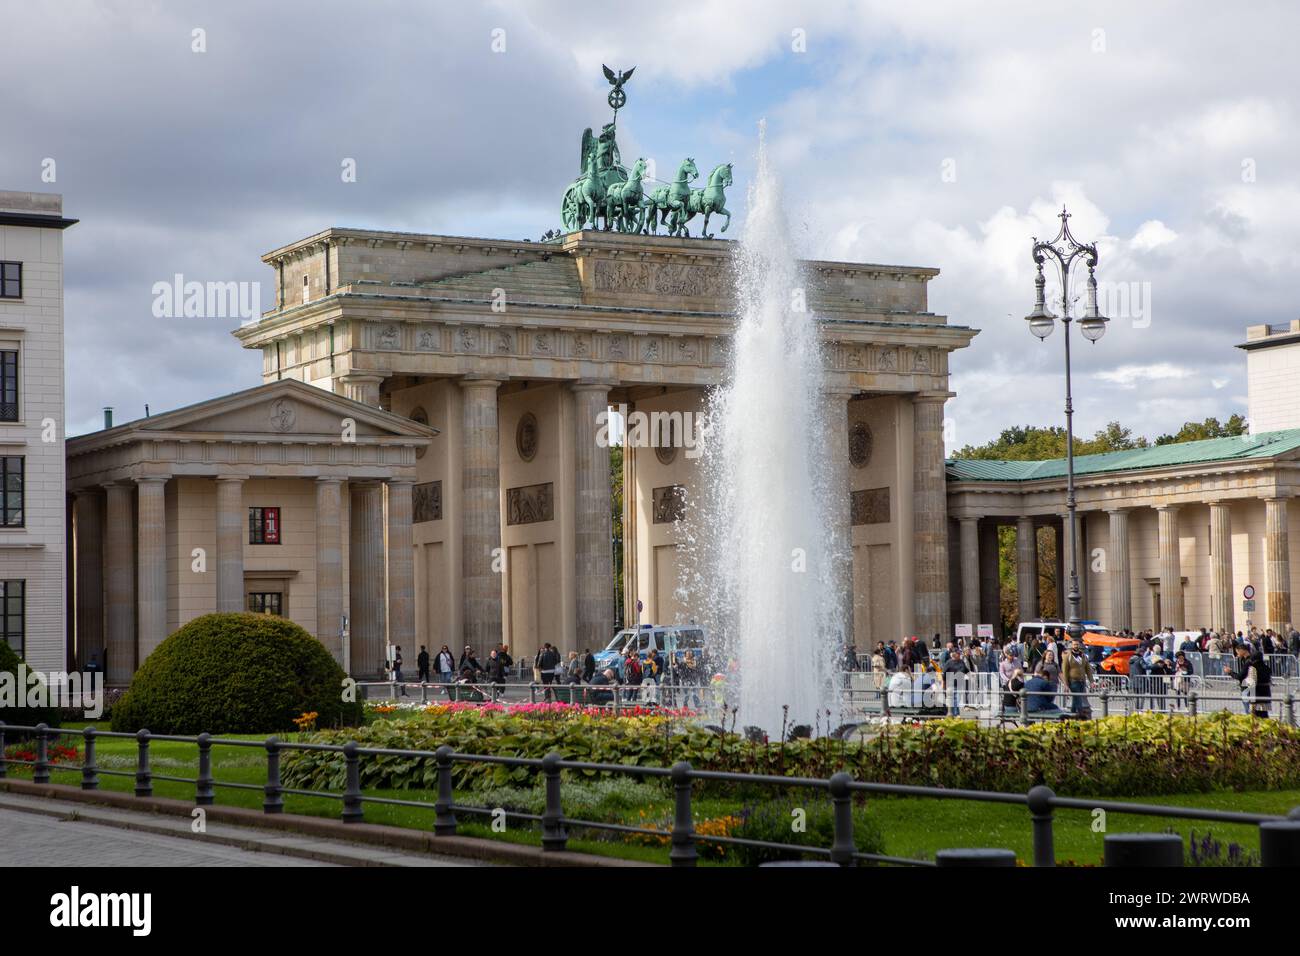 September 2022 - Brandenburger Tor und Wahrzeichen aus dem 18. Jahrhundert mit dorischen Säulen und klassischer Göttin-Statue in Berlin, der Hauptstadt Deutschlands Stockfoto